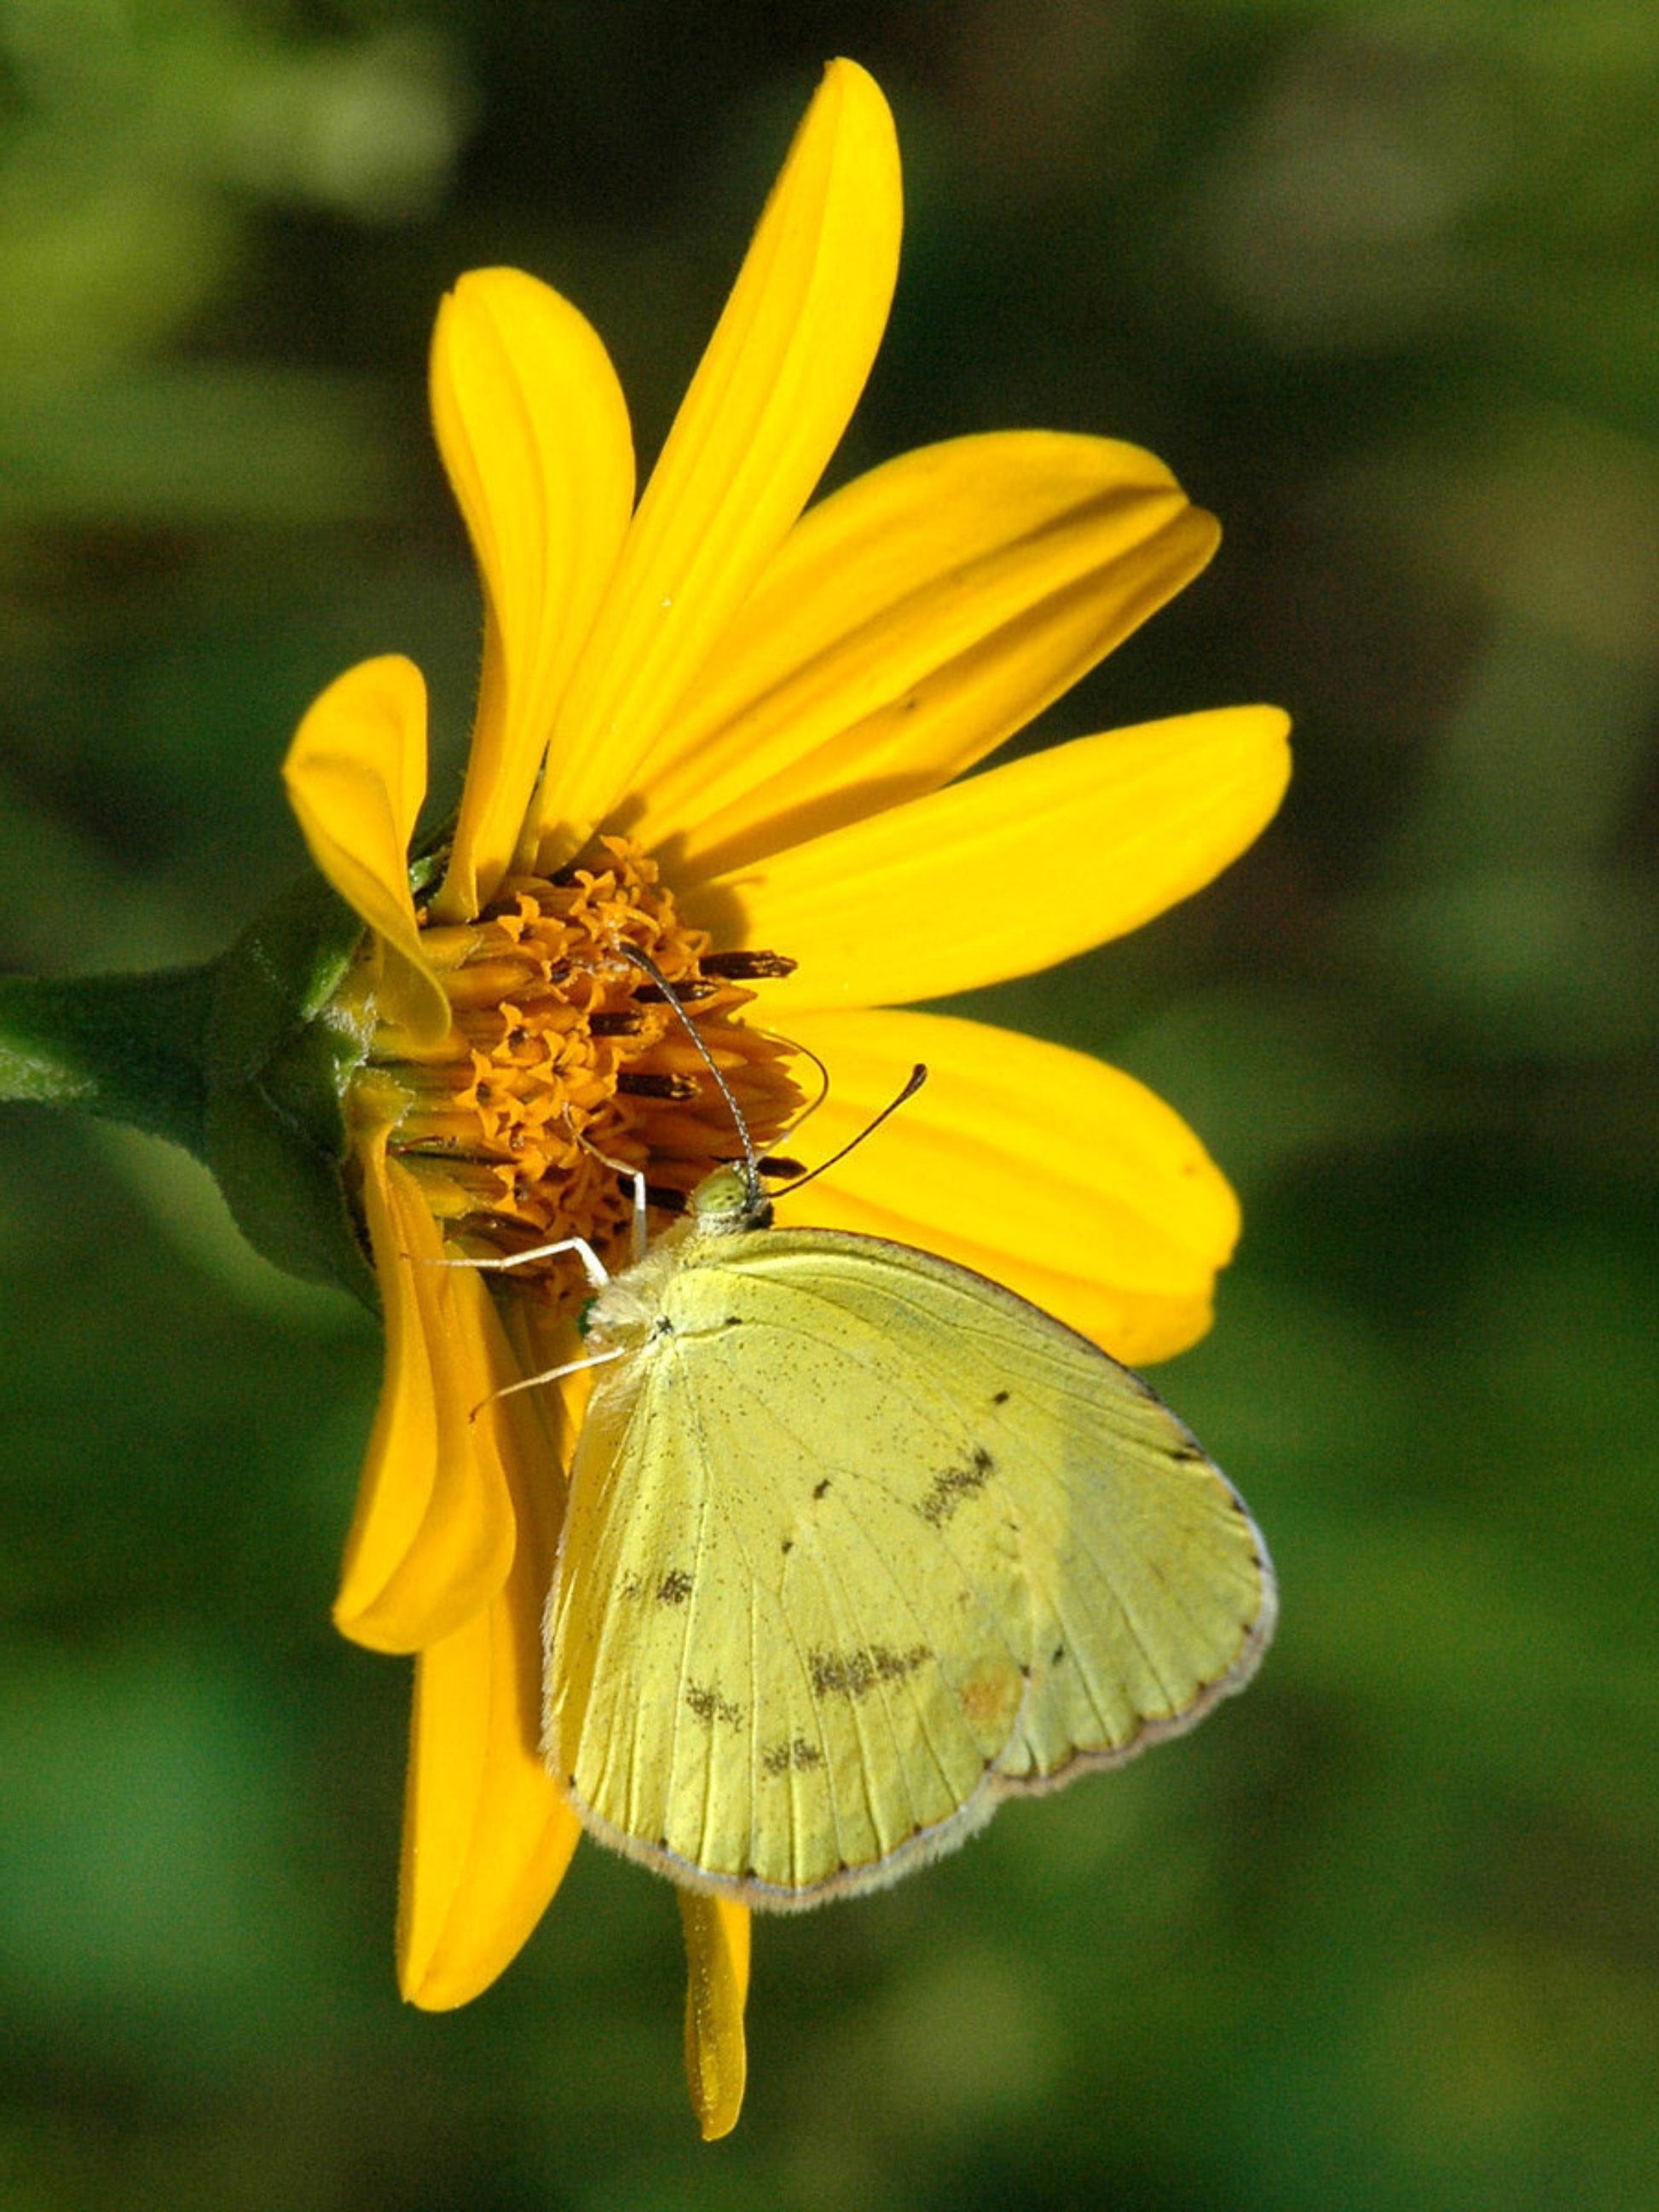 Little sulphur butterfly on a nectar sunflower